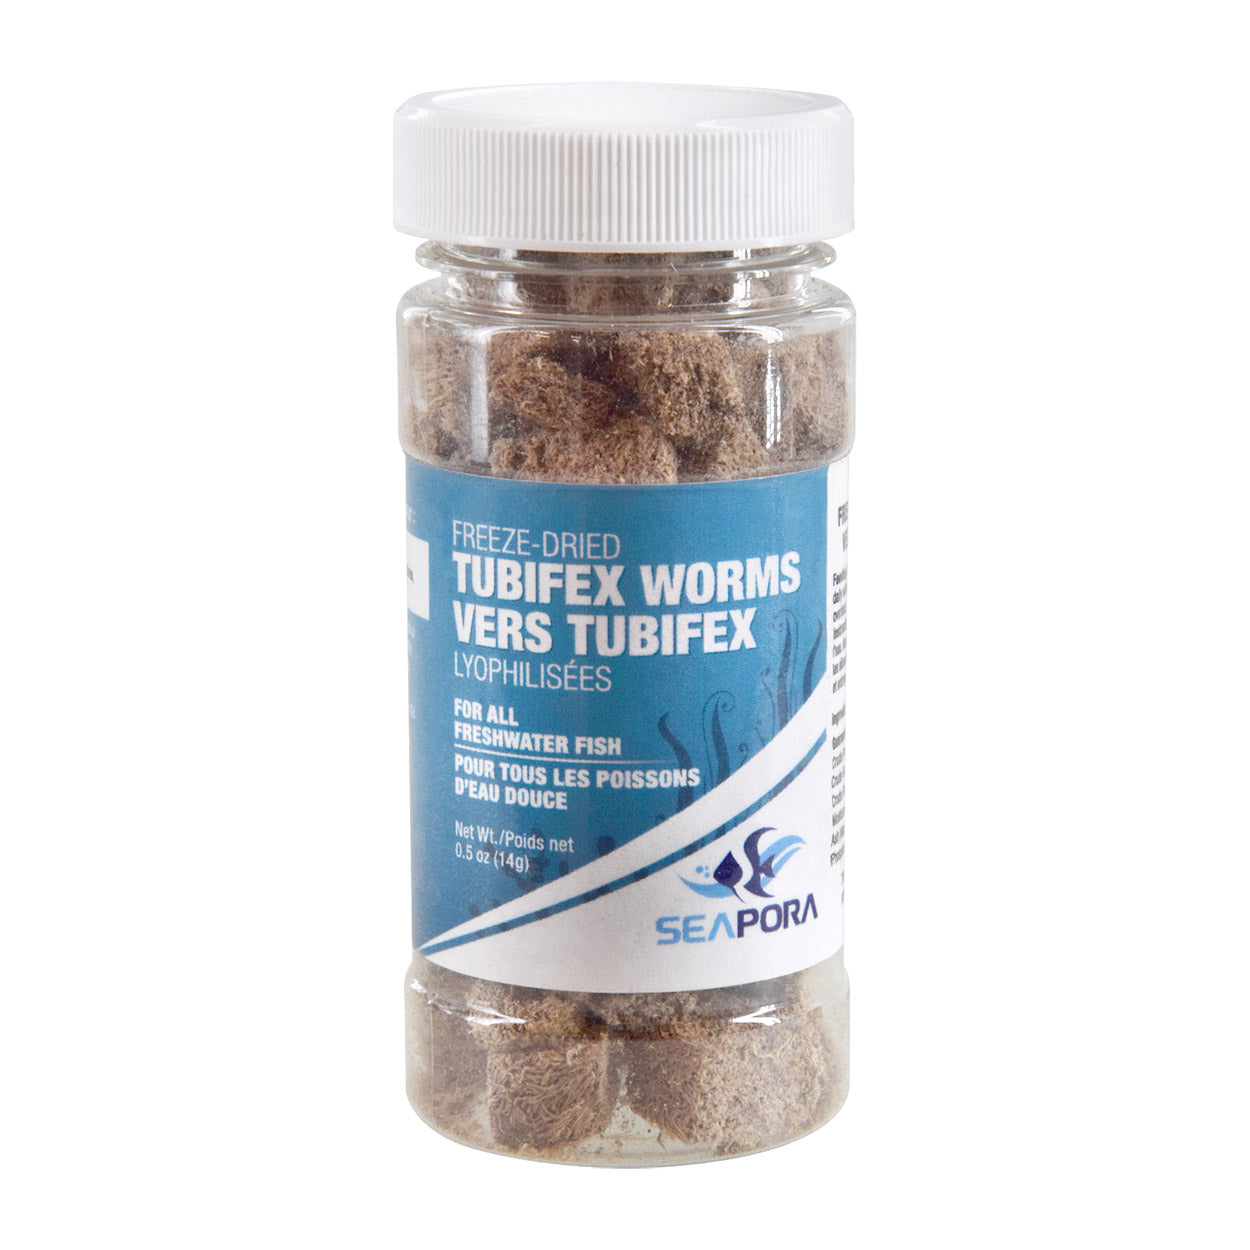 Seapora Freeze Dried Tubifex Worms